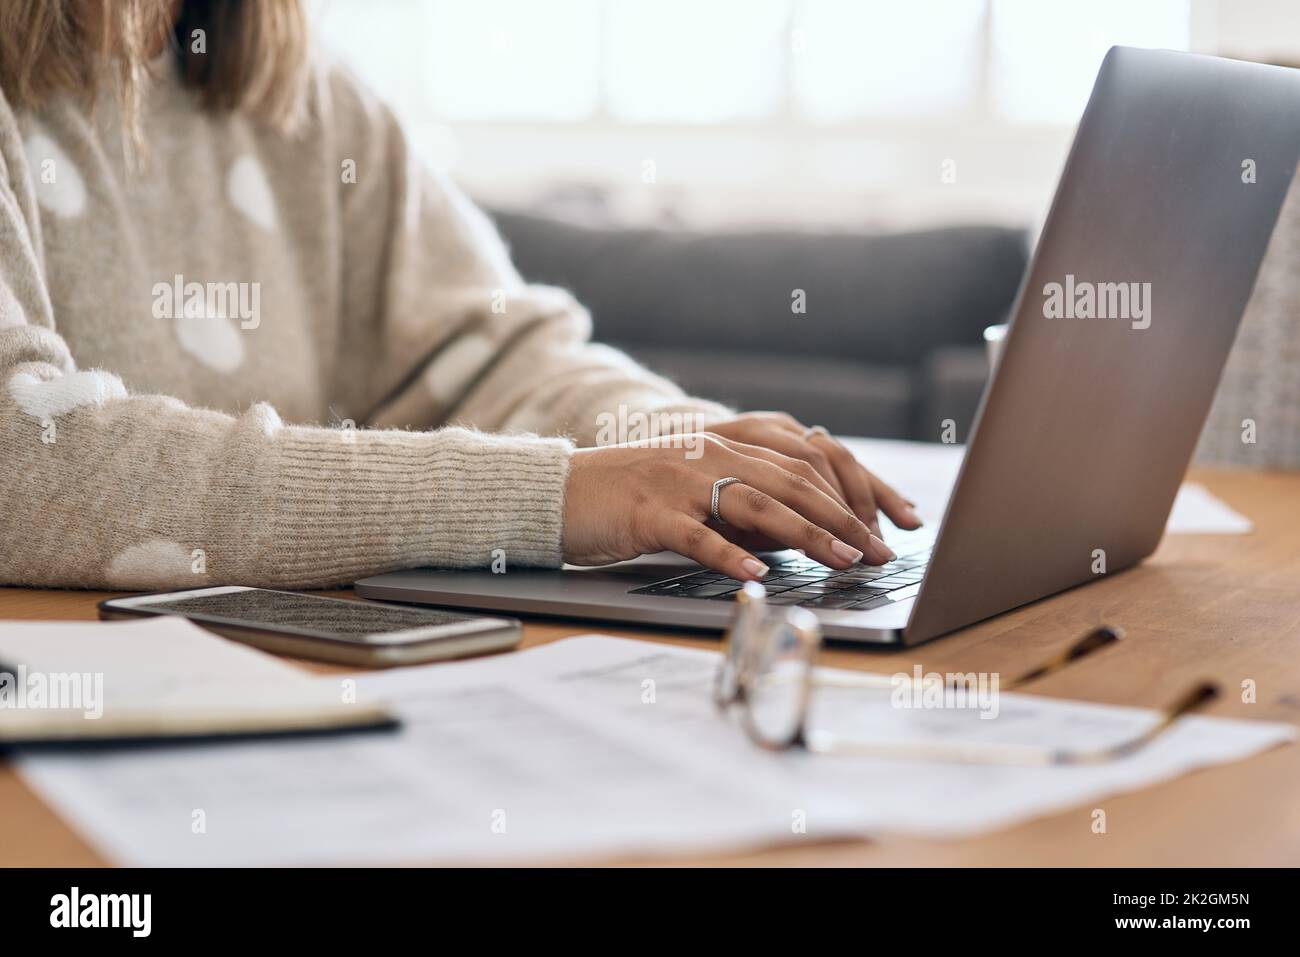 Jeden Tag auf den Erfolg hinarbeiten. Ausgeschnittene Aufnahme einer Frau, die ihren Laptop benutzt, während sie von zu Hause aus arbeitet. Stockfoto